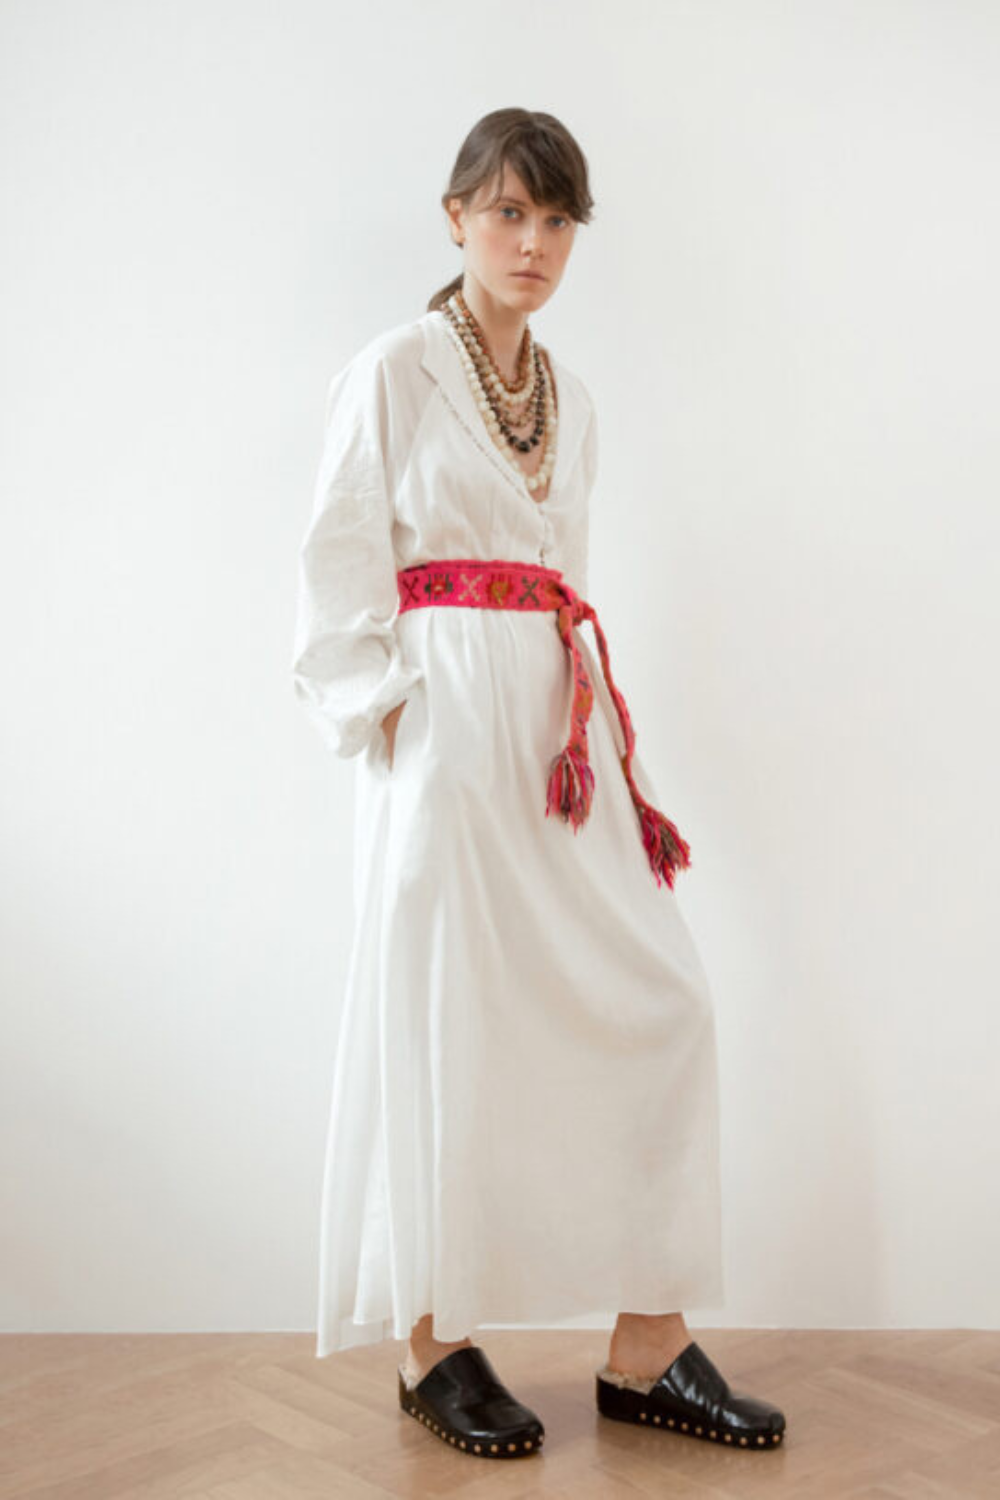 Šaty za motivy tradiční košile s designovou výšivkou (bílá na bílém) (Gaptuvalnya) G_0018